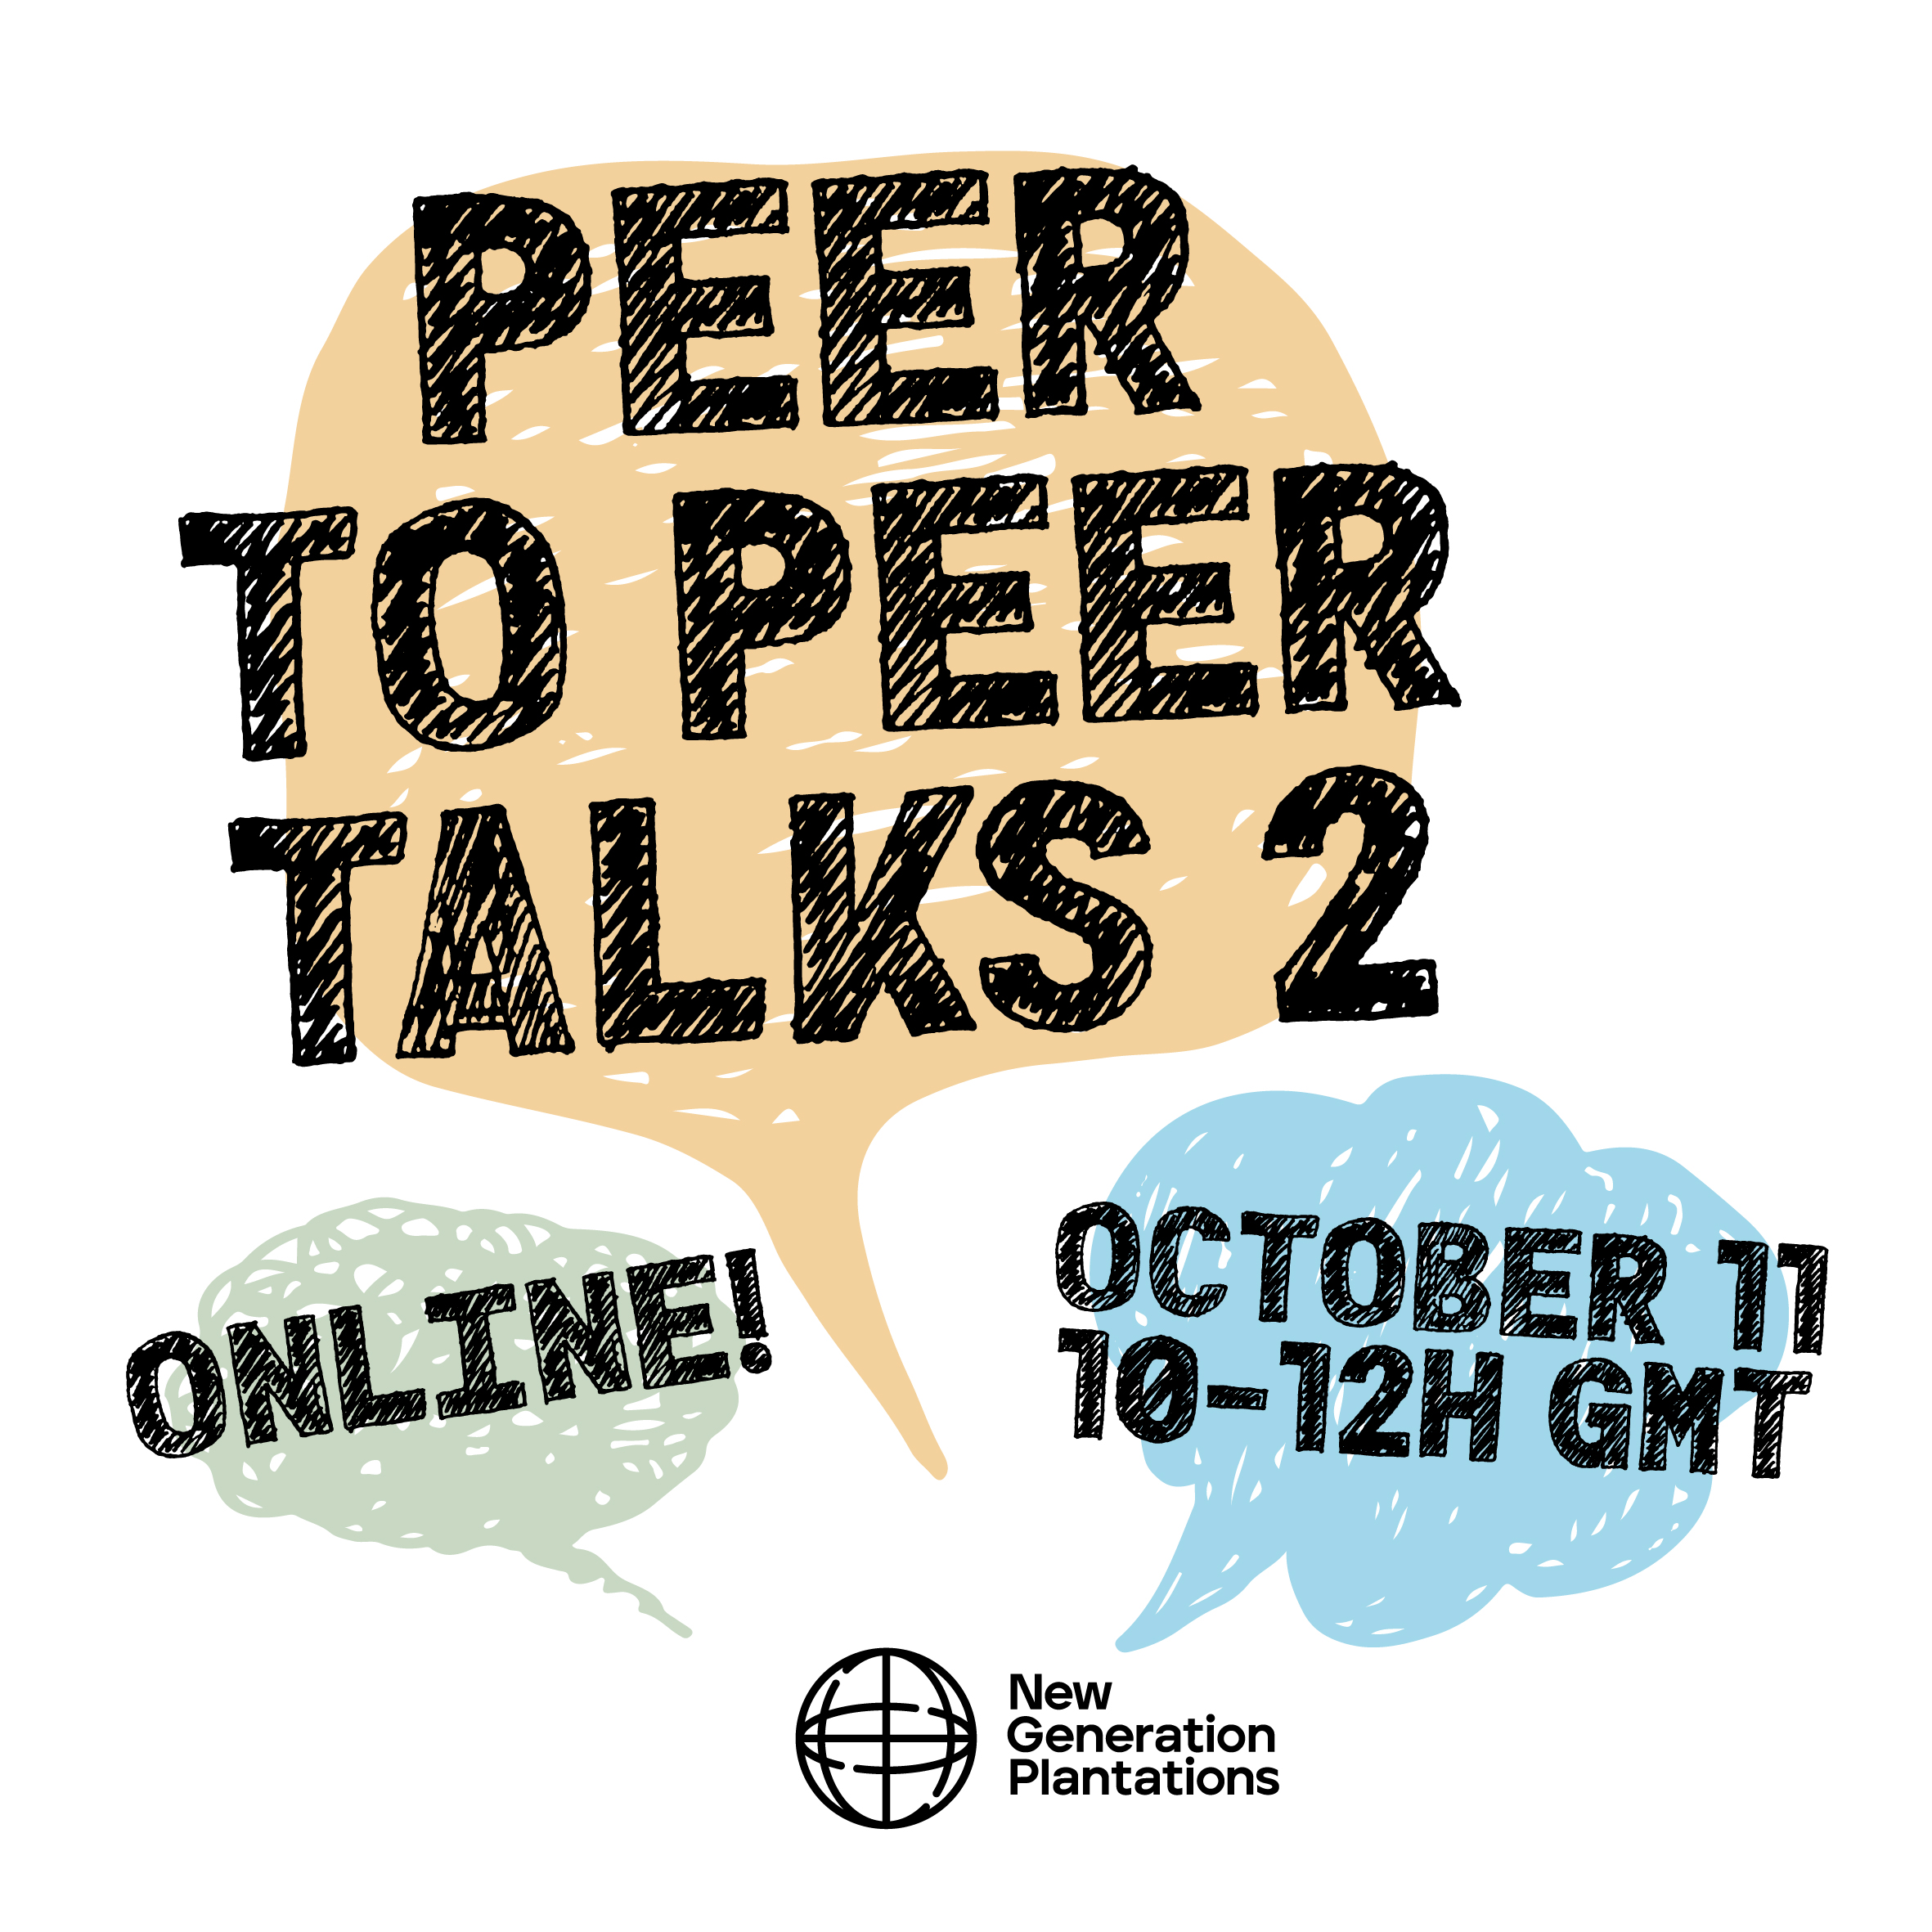 NGP's Peer to Peer talks 2, Set 2023